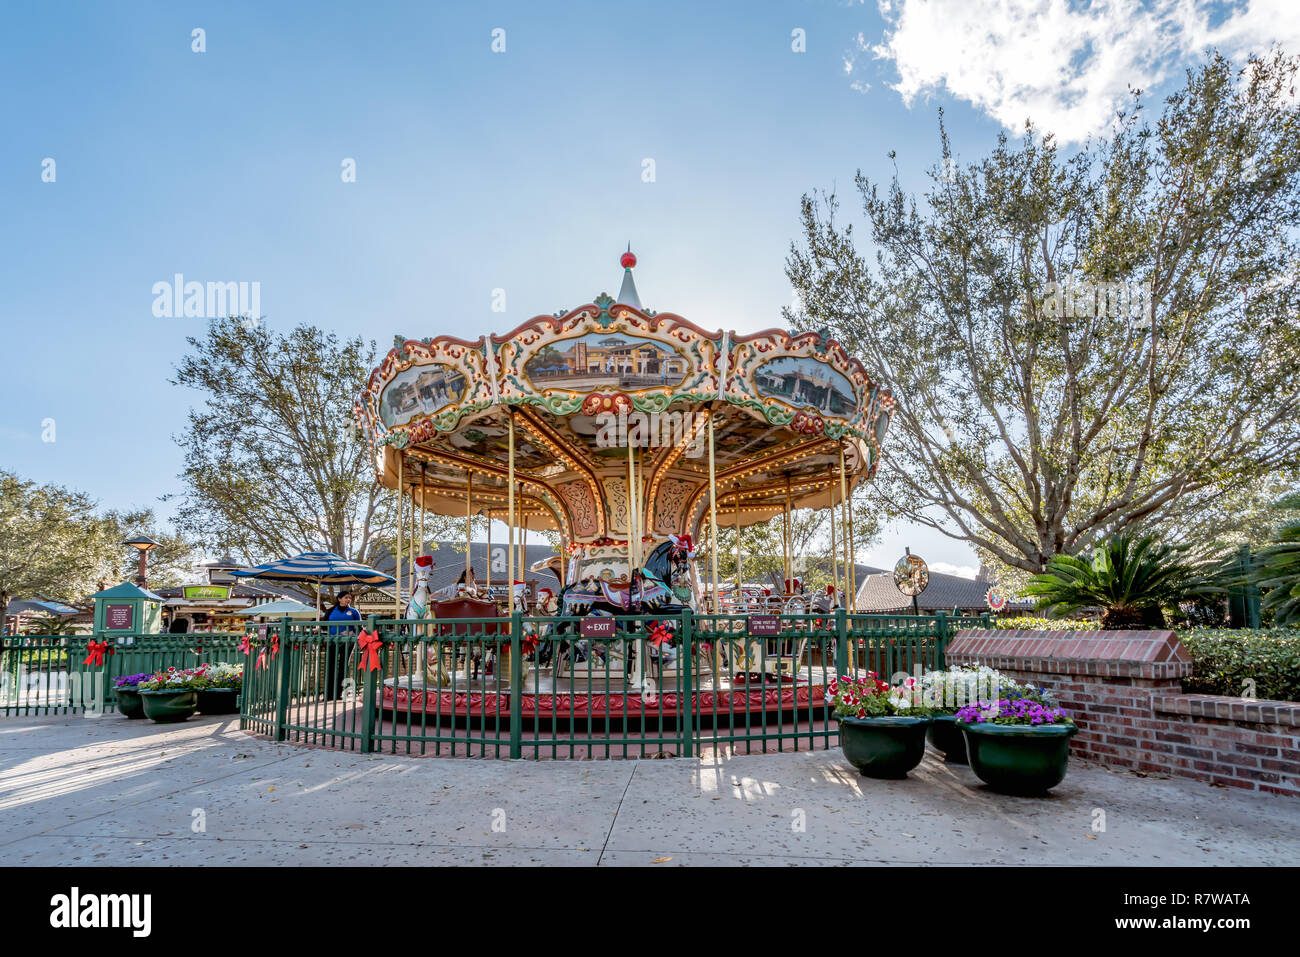 Orlando, Florida - Dicembre 2017: Colorful merry-go-round giostra Park Circus festa di carnevale a Lake Buena Vista Foto Stock